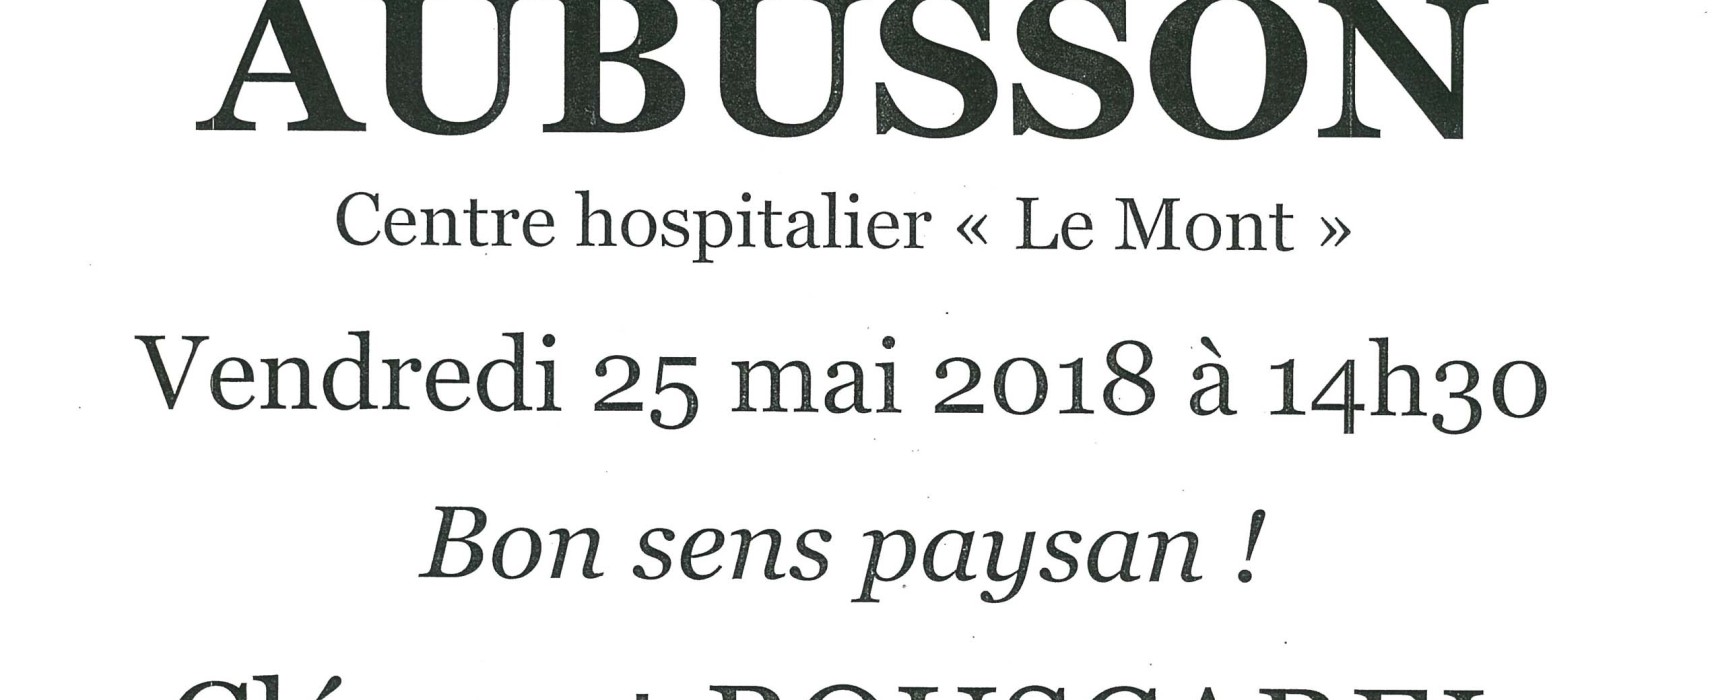 Spectacle – « Bon sens paysan ! » Clément BOUSCAREL #Coquelicontes #Aubusson